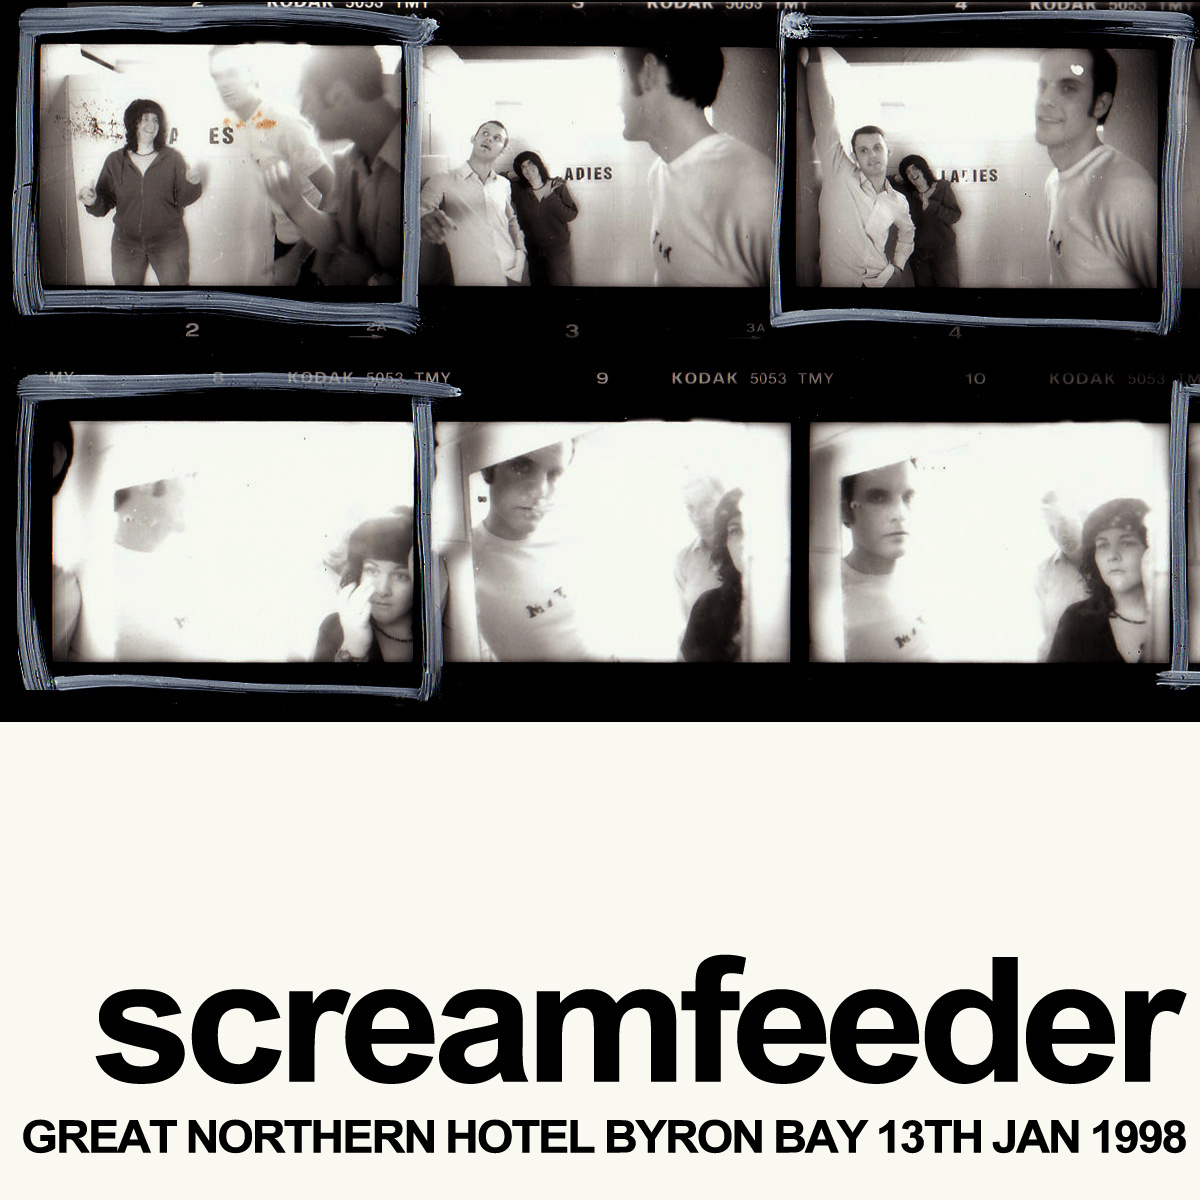 Great Northern Hotel, Byron Bay, 13/1/98